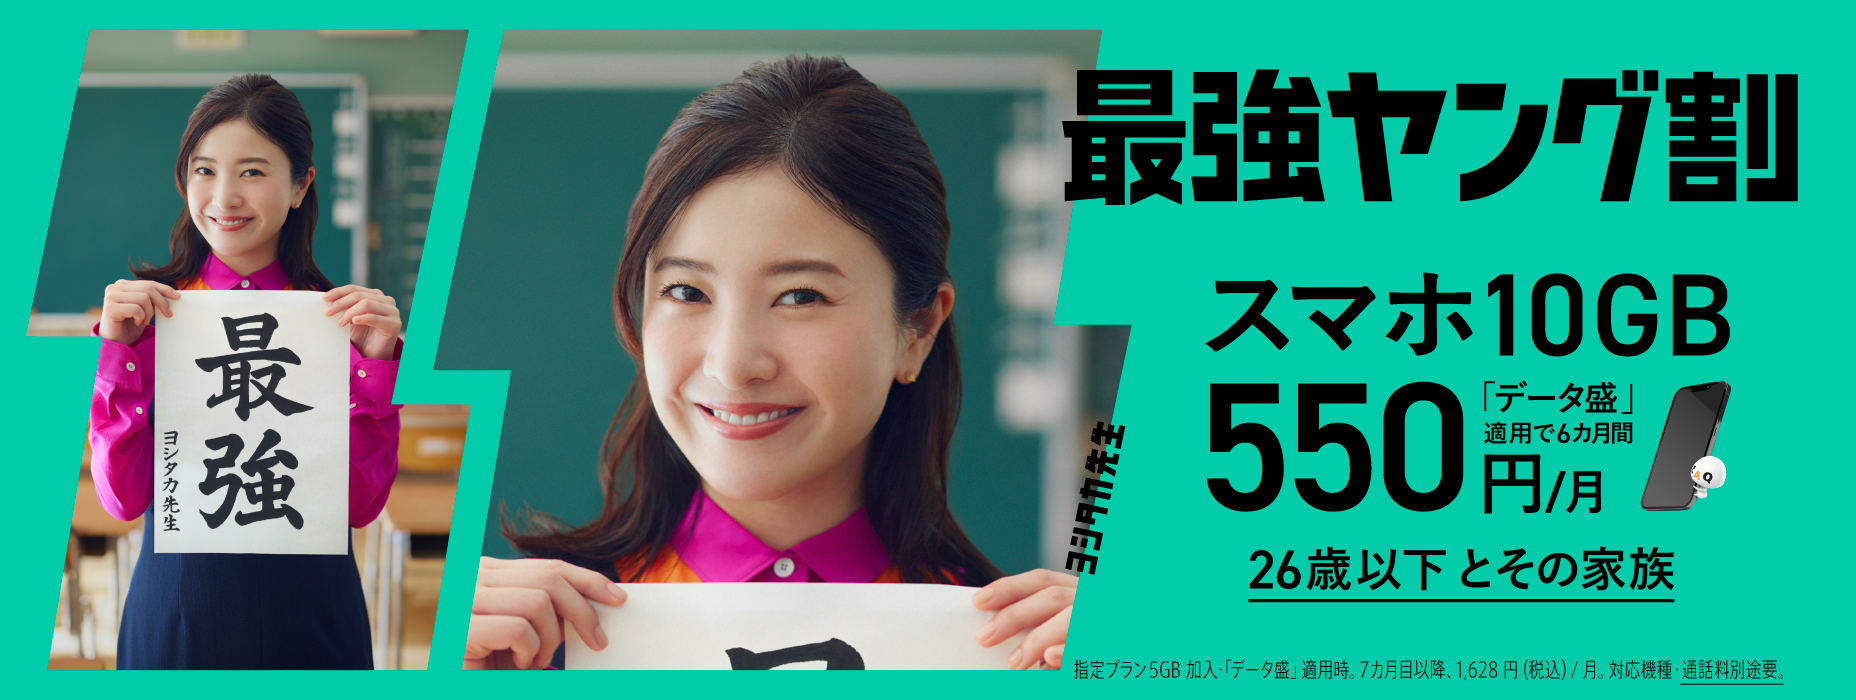 最强Young折扣智能手机10GB数据盛用6个月550日元/月26岁以下及其家人